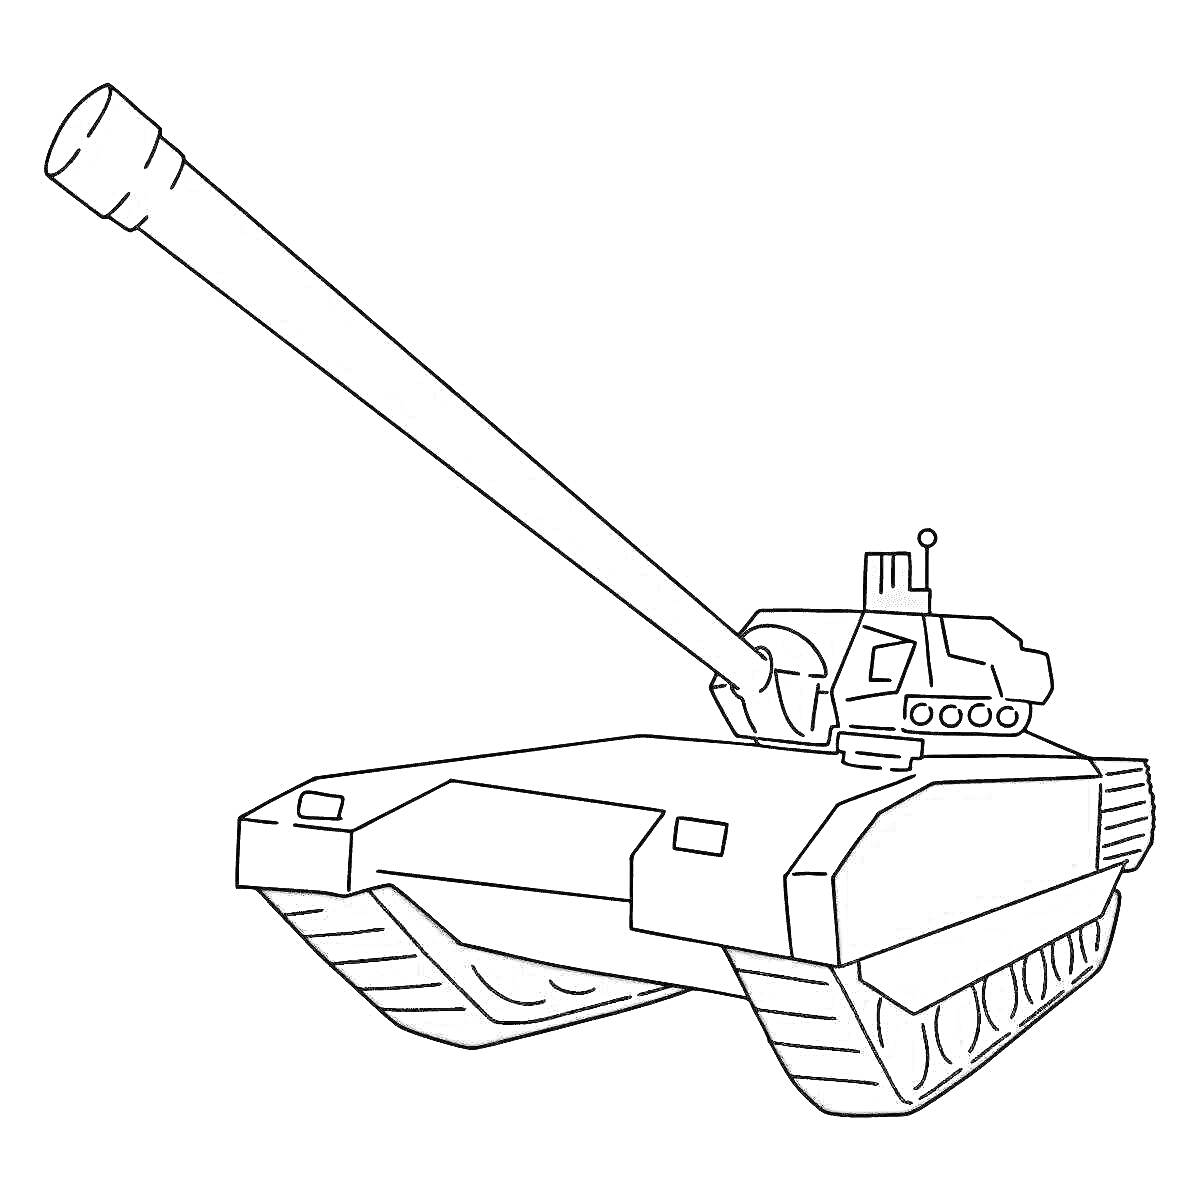 Раскраска Танковая армата с длинным стволом, гусеницами и башней с антеннами и сенсорами